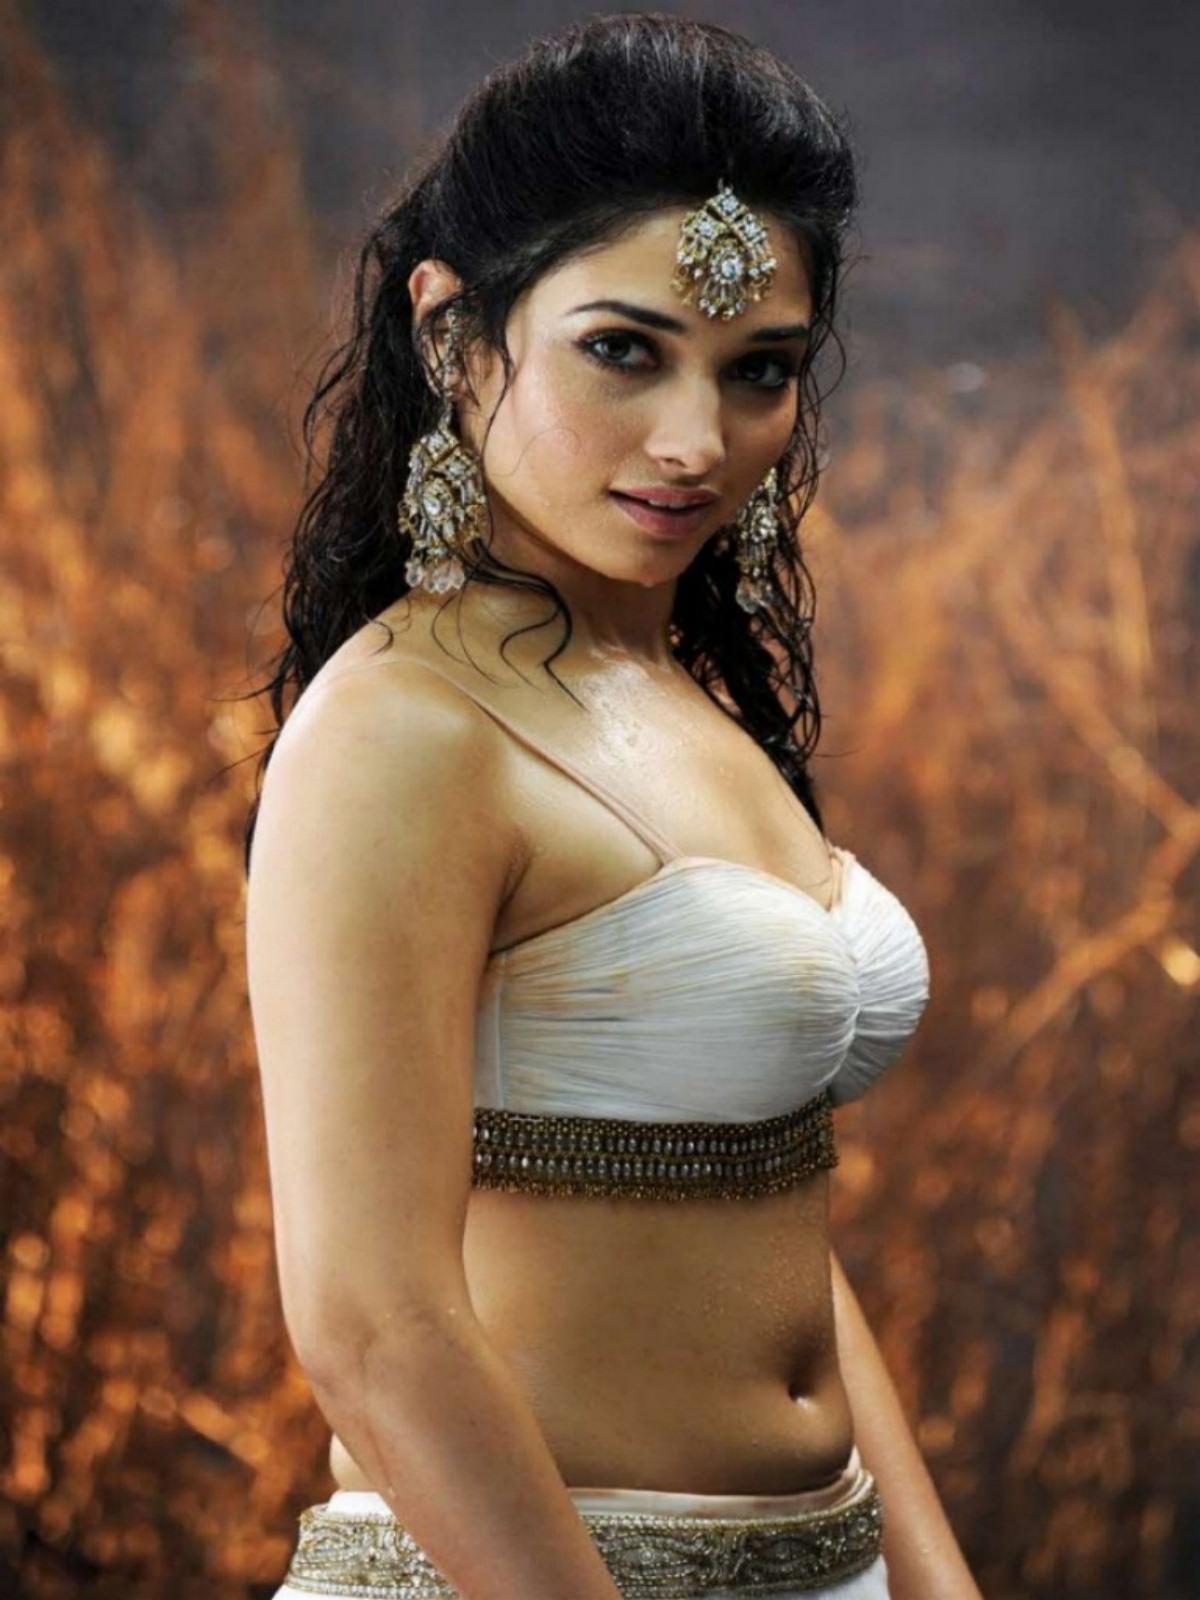 Bollywood Tamil Actress Hot Navel Photos Hd Photos - Hot Tamil Actress Navel - HD Wallpaper 